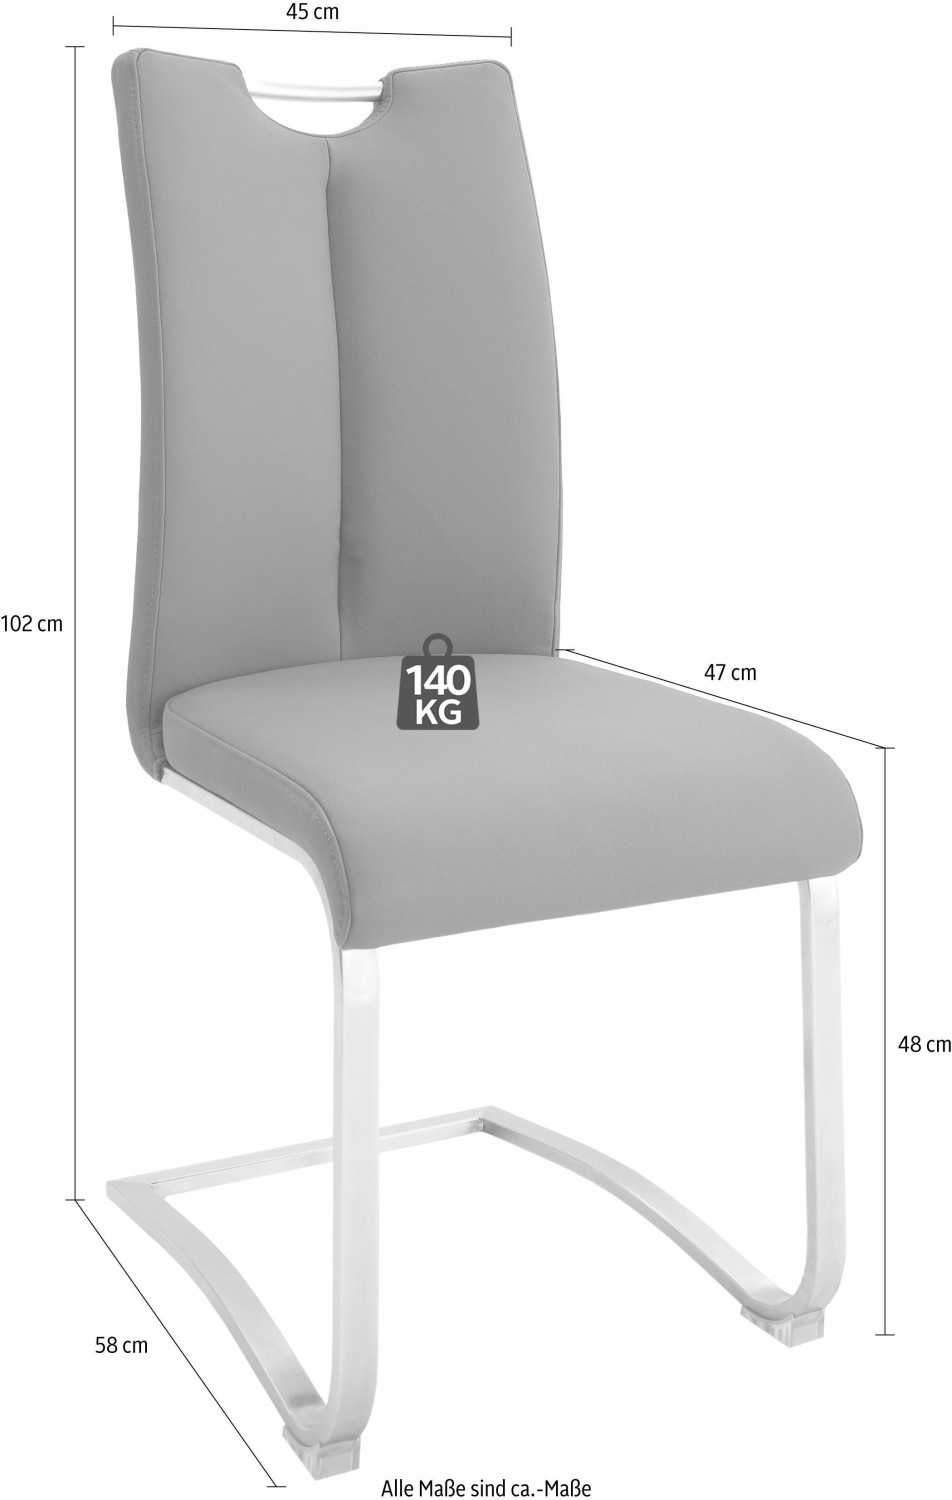 MCA Furniture Artos A2XL20 2er schwarz gebürstet ab 199,99 € |  Preisvergleich bei